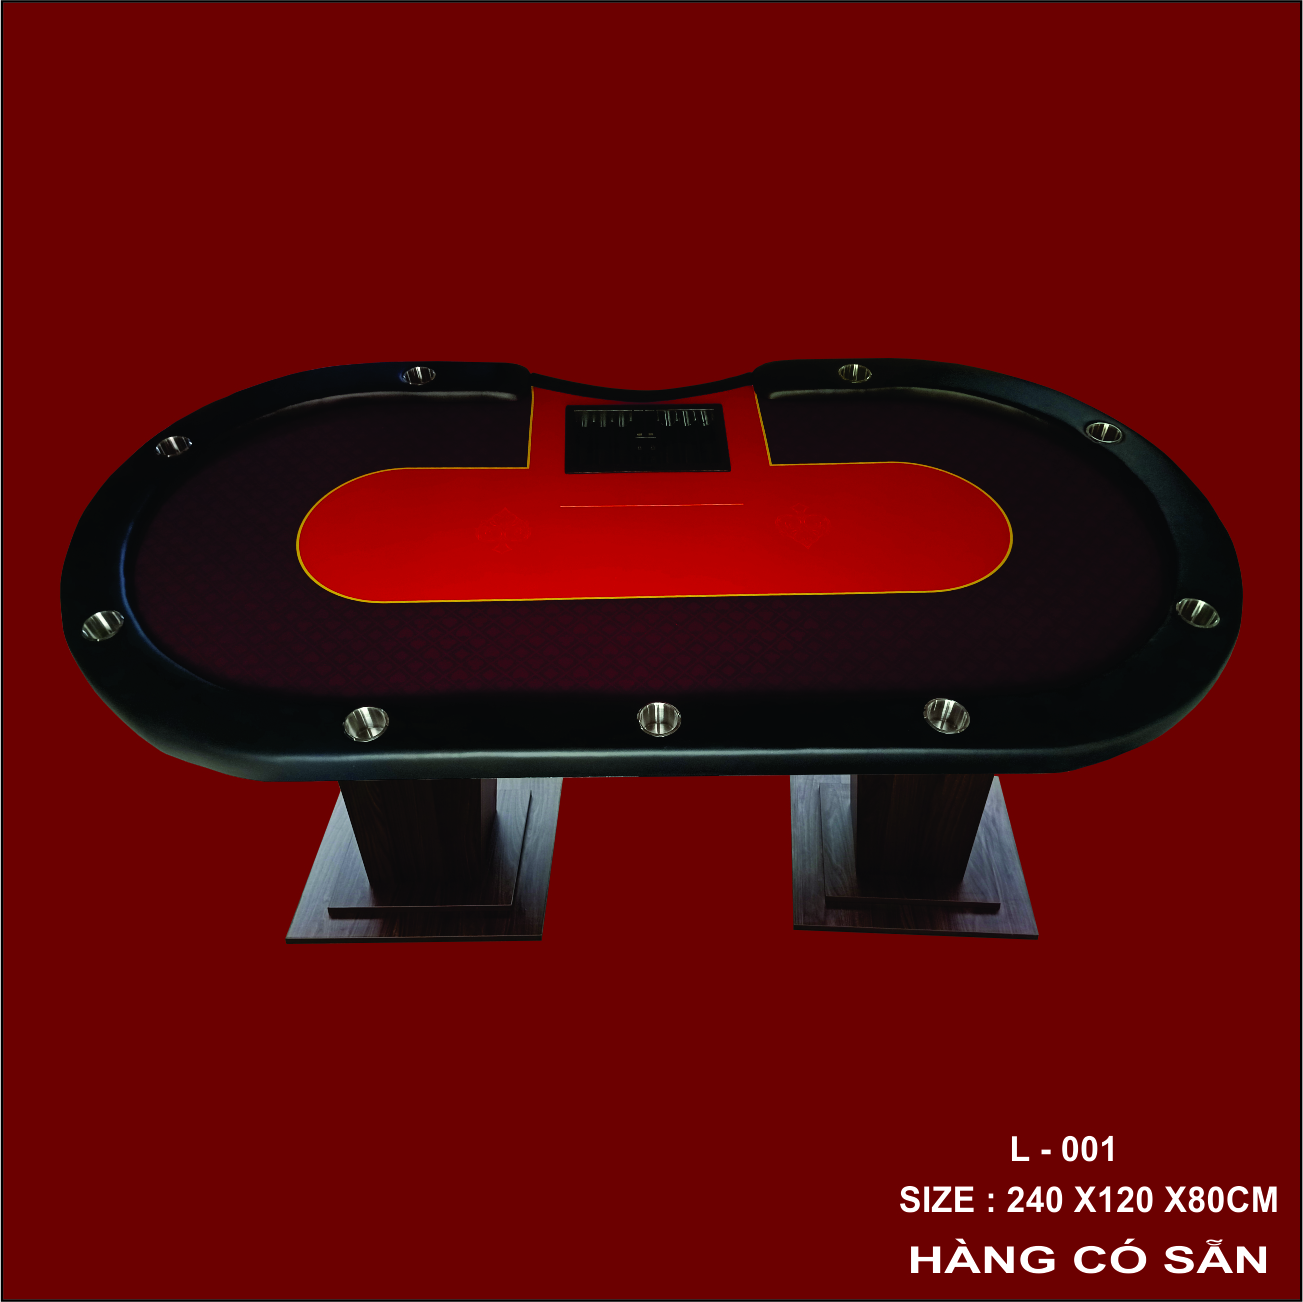 bàn poker L - 001